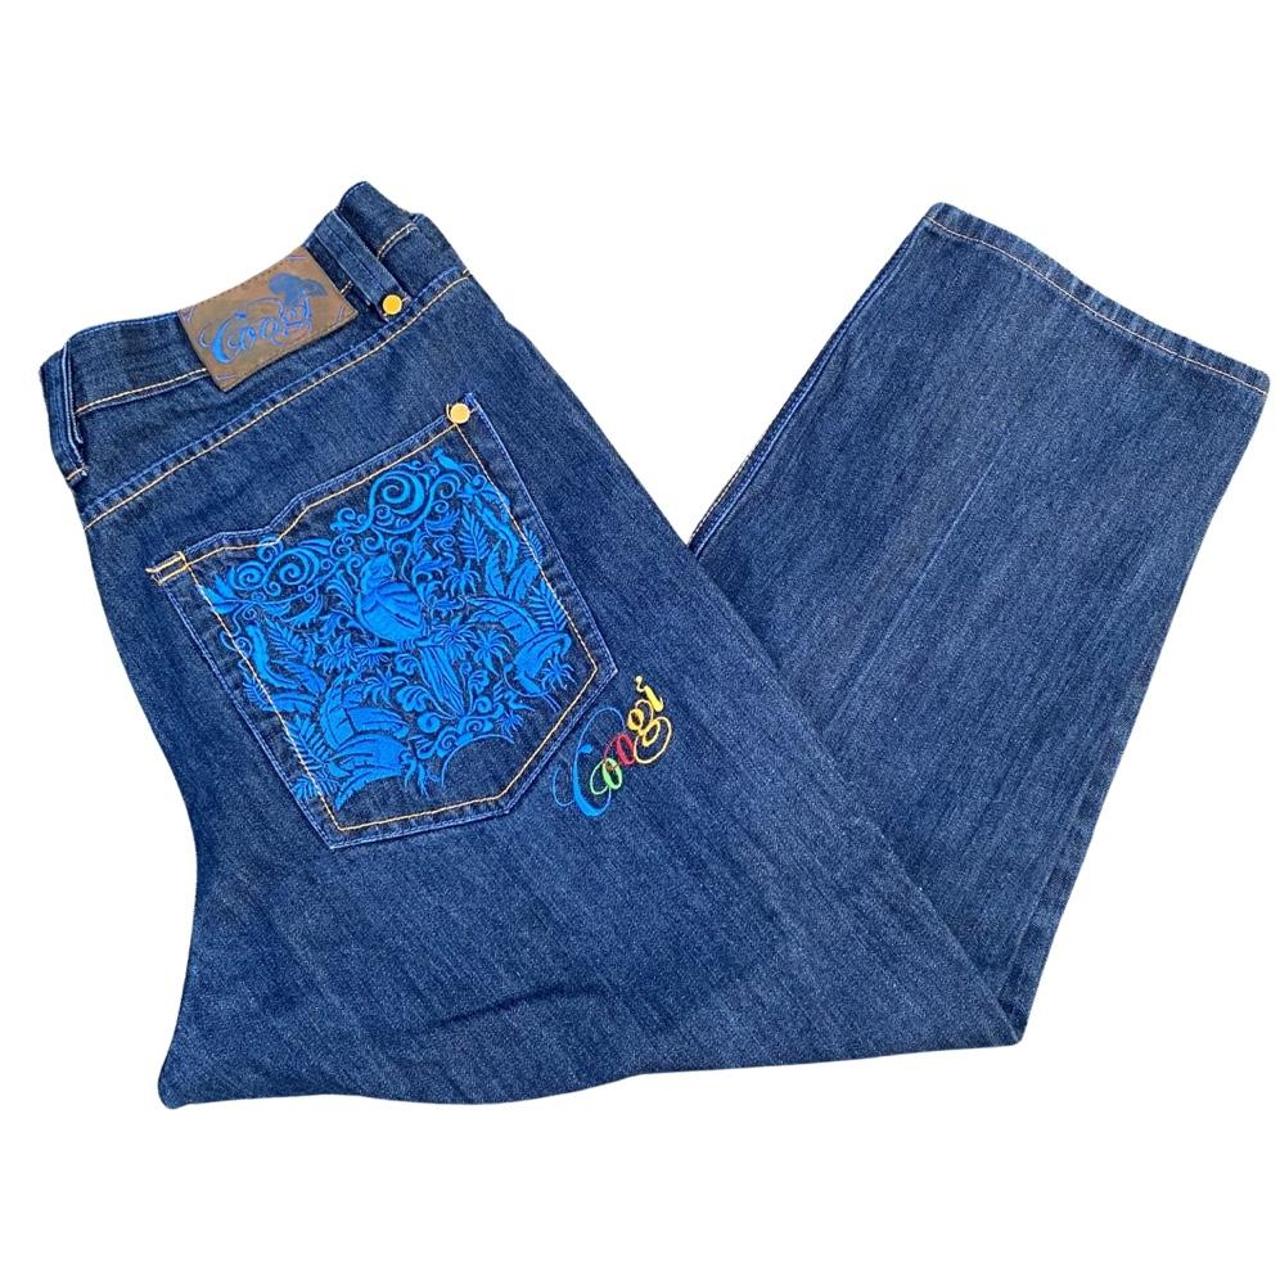 Vintage Coogi denim jeans | W42 L34 #coogi #denim... - Depop